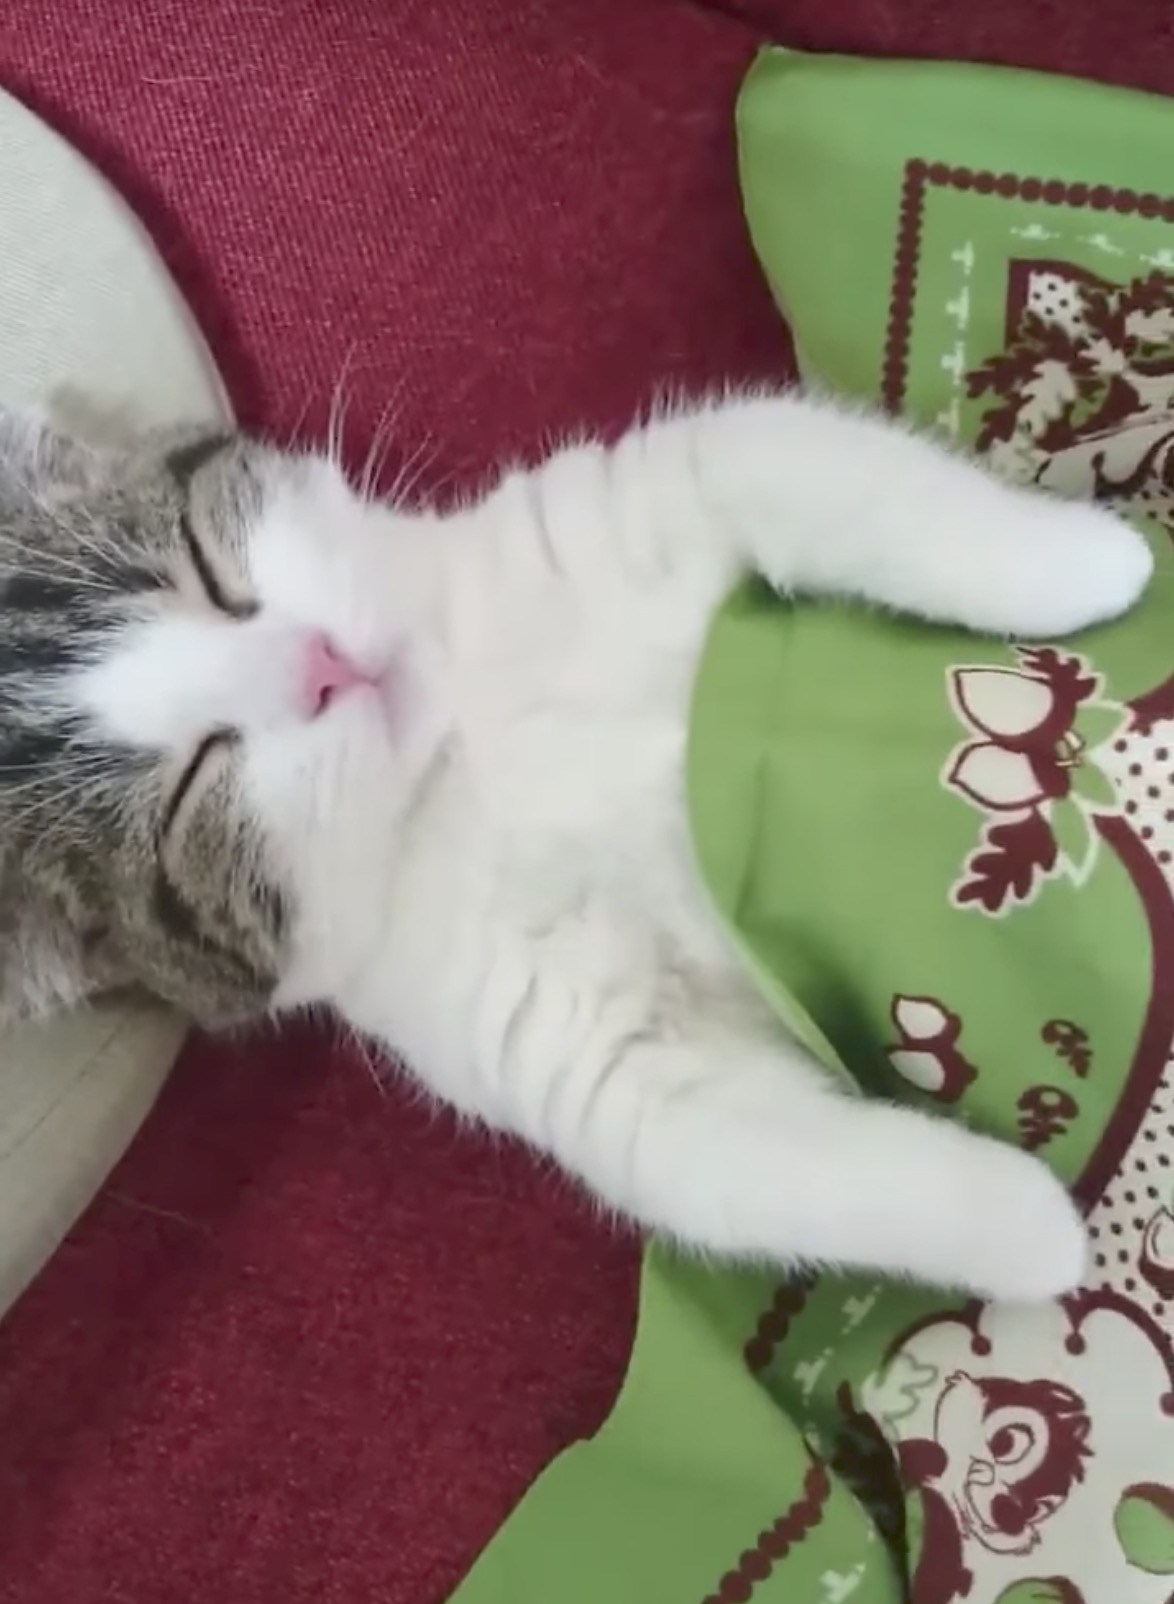 腹丸出しで眠る猫、お布団掛けてもやっぱり爆睡